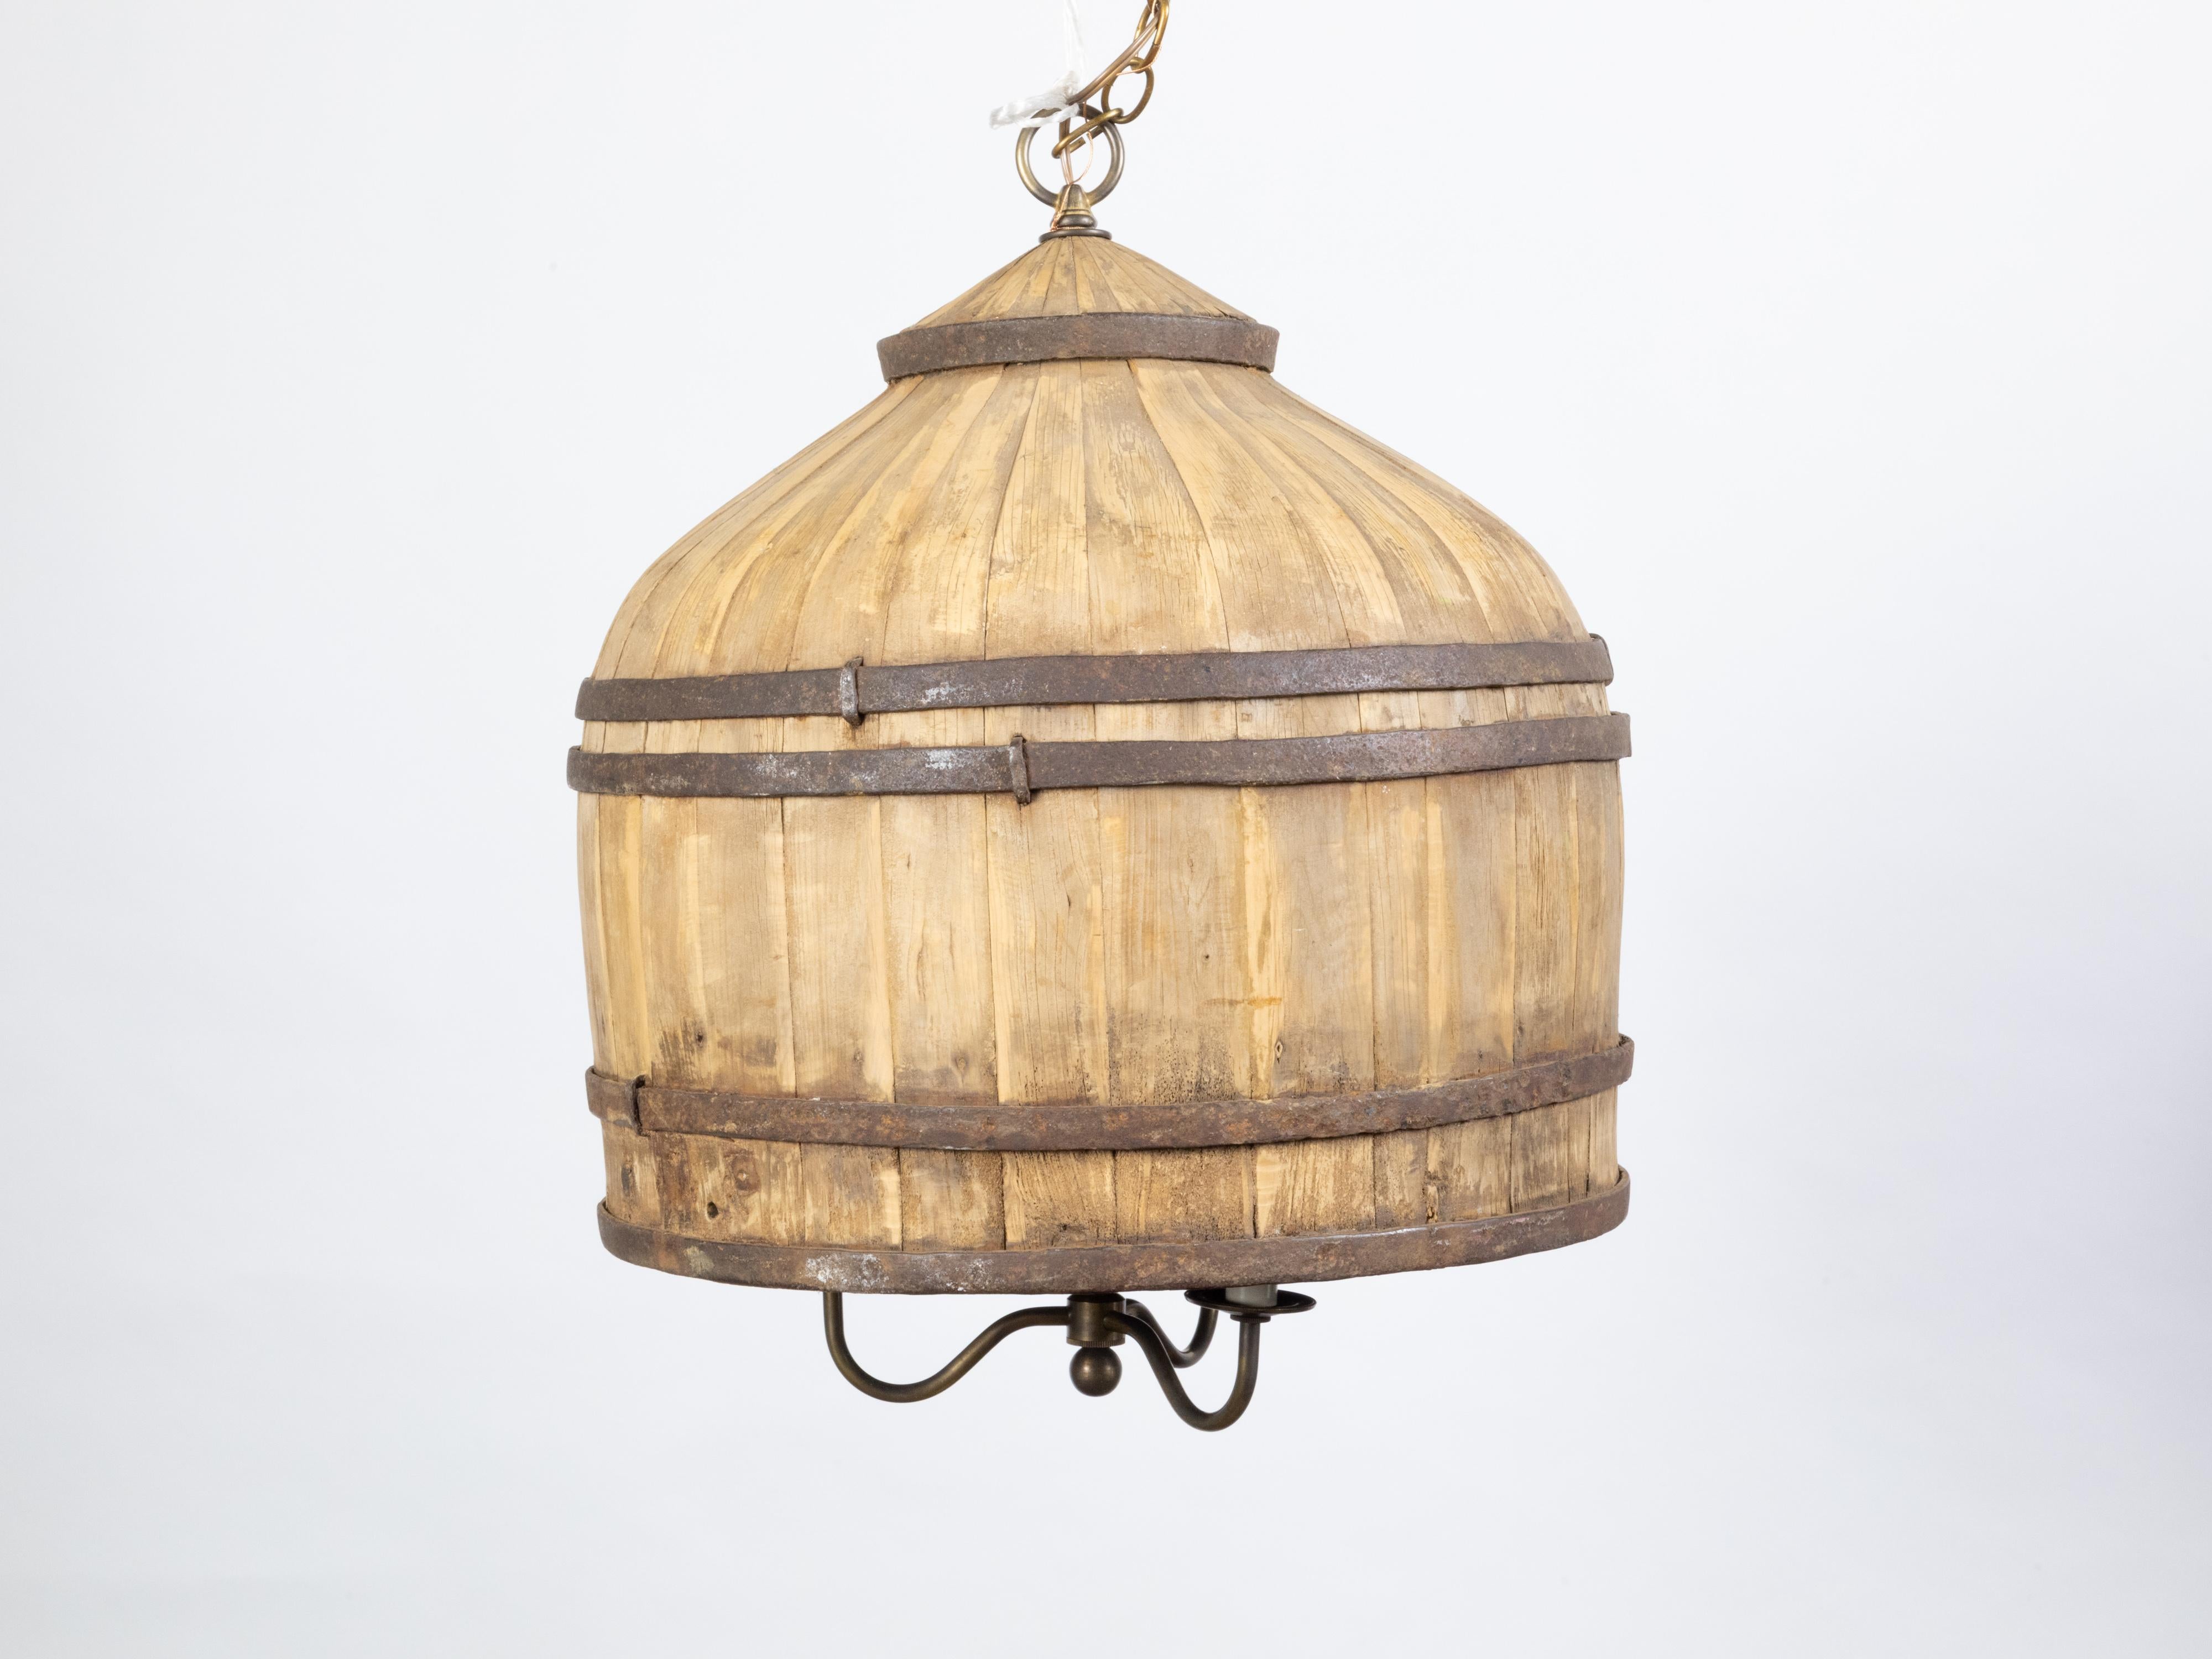 Un luminaire anglais vintage en bois du milieu du 20ème siècle, avec trois bras. Créé en Angleterre au cours de la période du milieu du siècle dernier, ce luminaire rustique présente un baril de bois renforcé par des entretoises métalliques, fixant